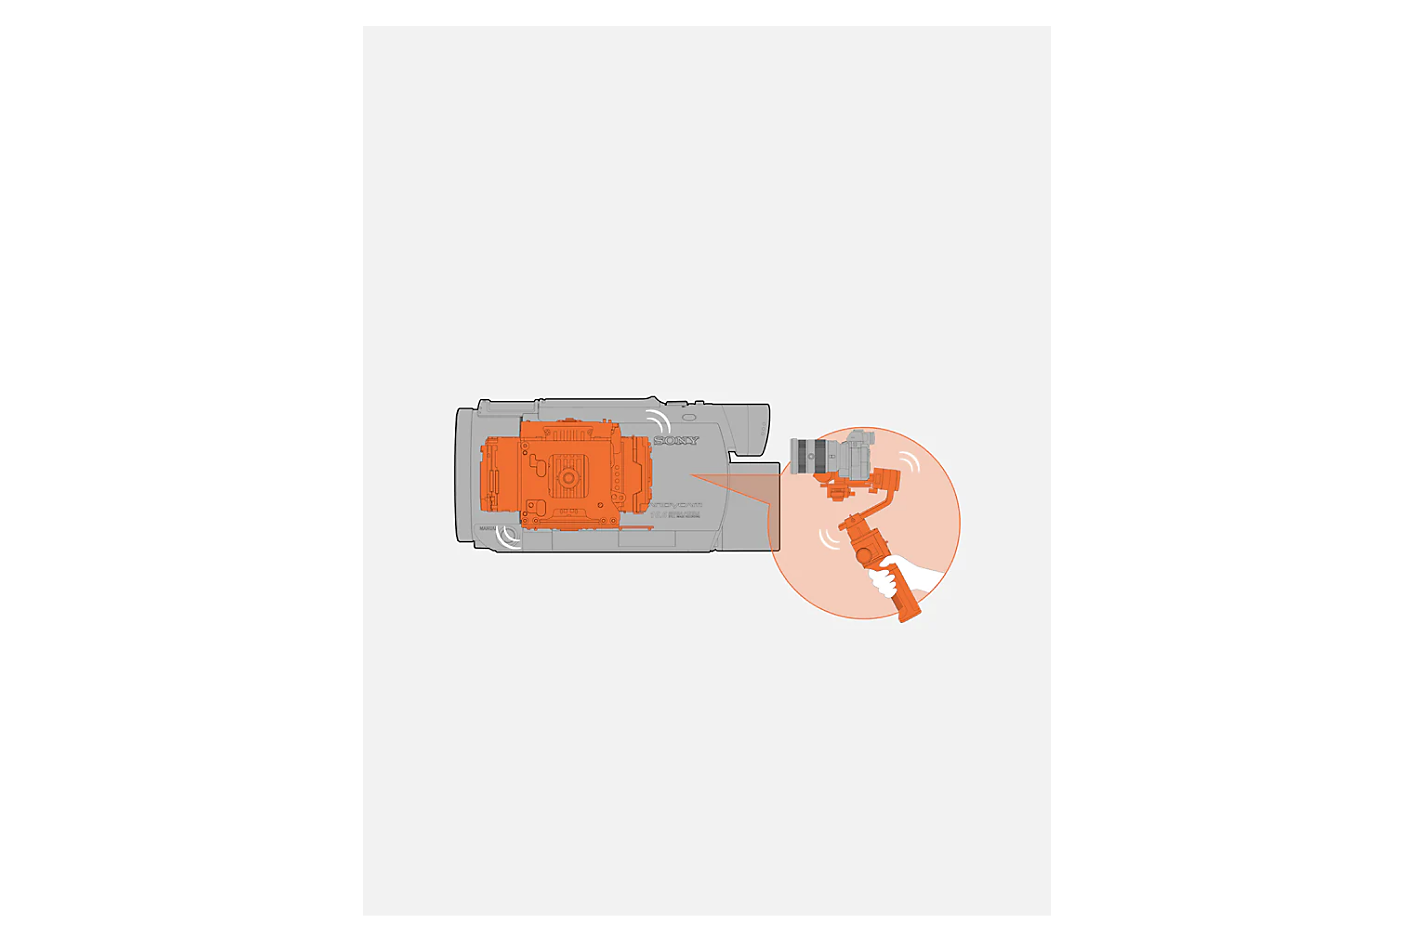 Grafika sivého kamkordéra s oranžovým vnútorným stabilizátorom